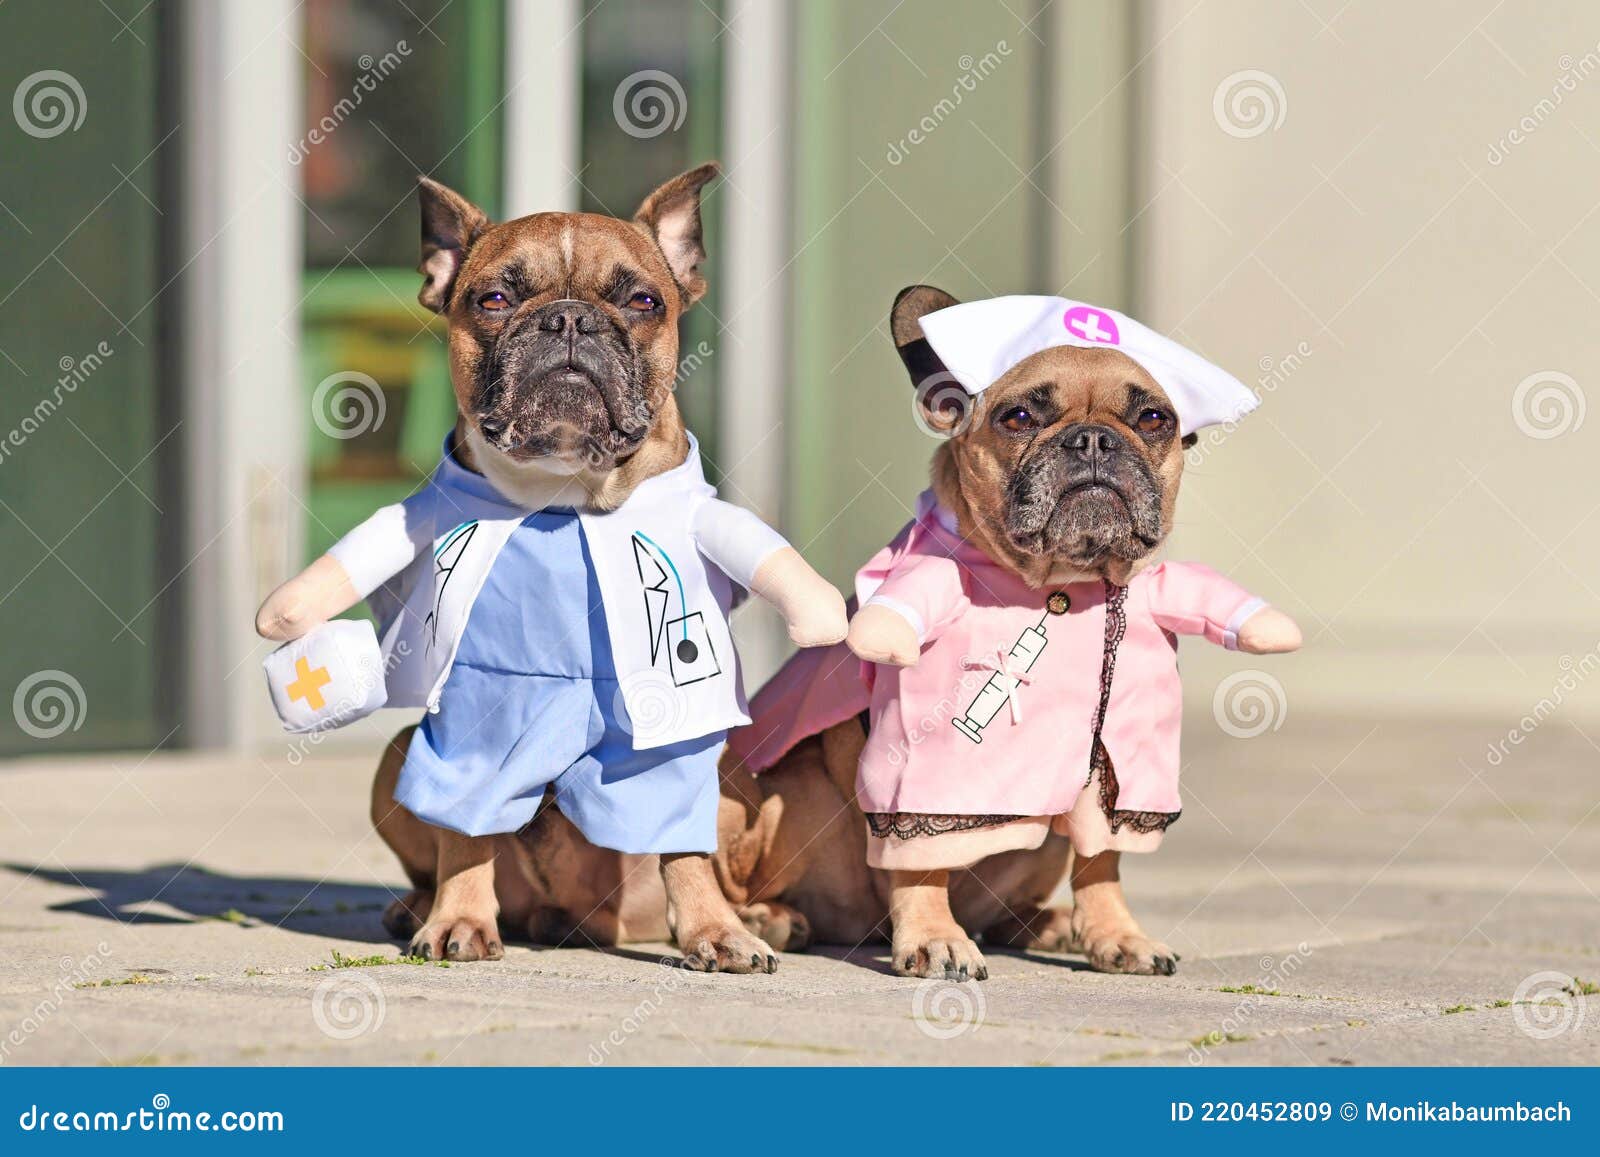 Separación Puerto Giotto Dibondon Perros Bulldog Franceses Disfrazados Con Disfraz De Médico Y Enfermera  Imagen de archivo - Imagen de doméstico, francés: 220452809